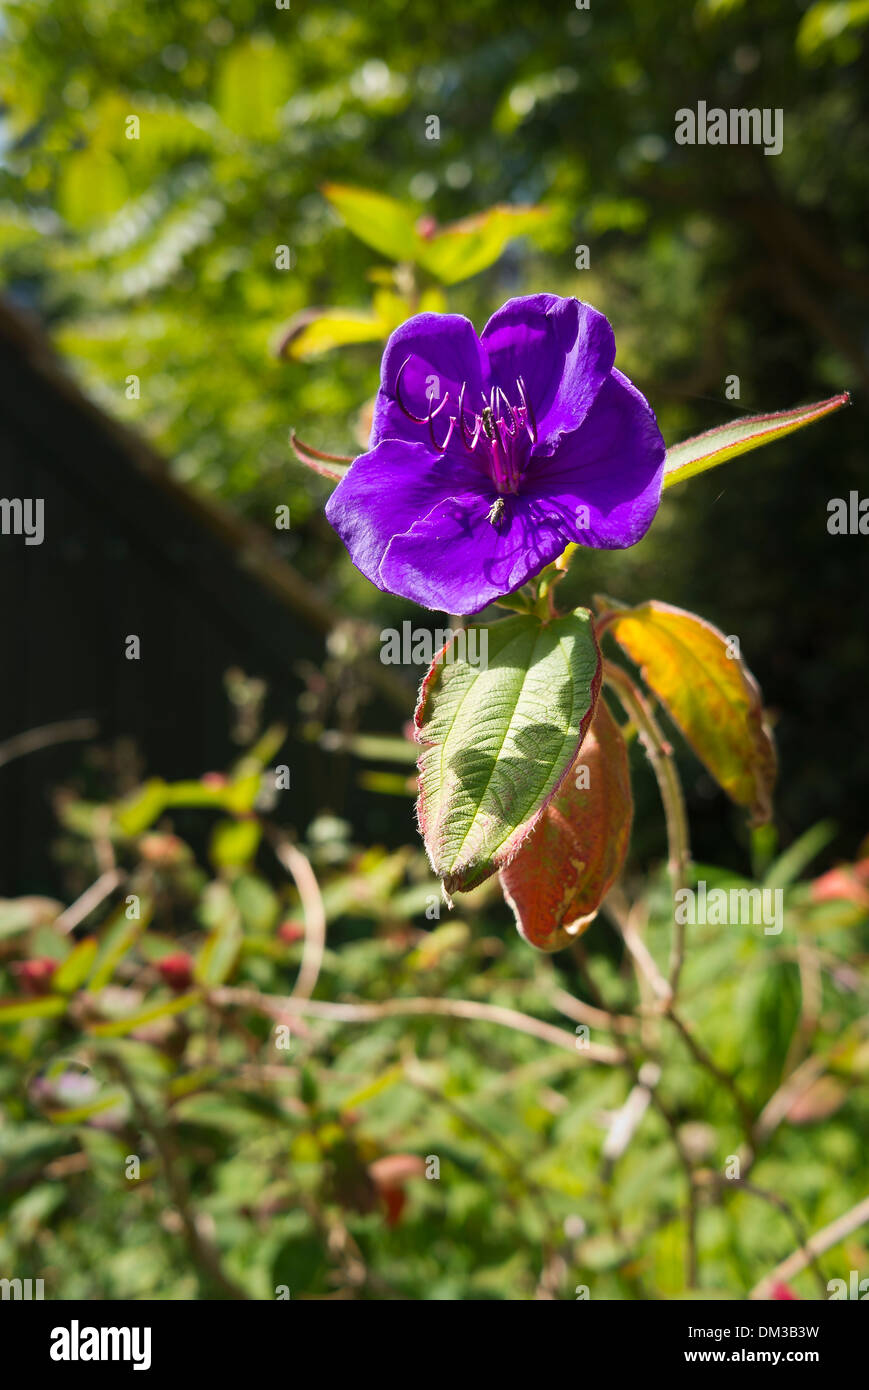 Tibouchina flower seein in a Guernsey garden Stock Photo